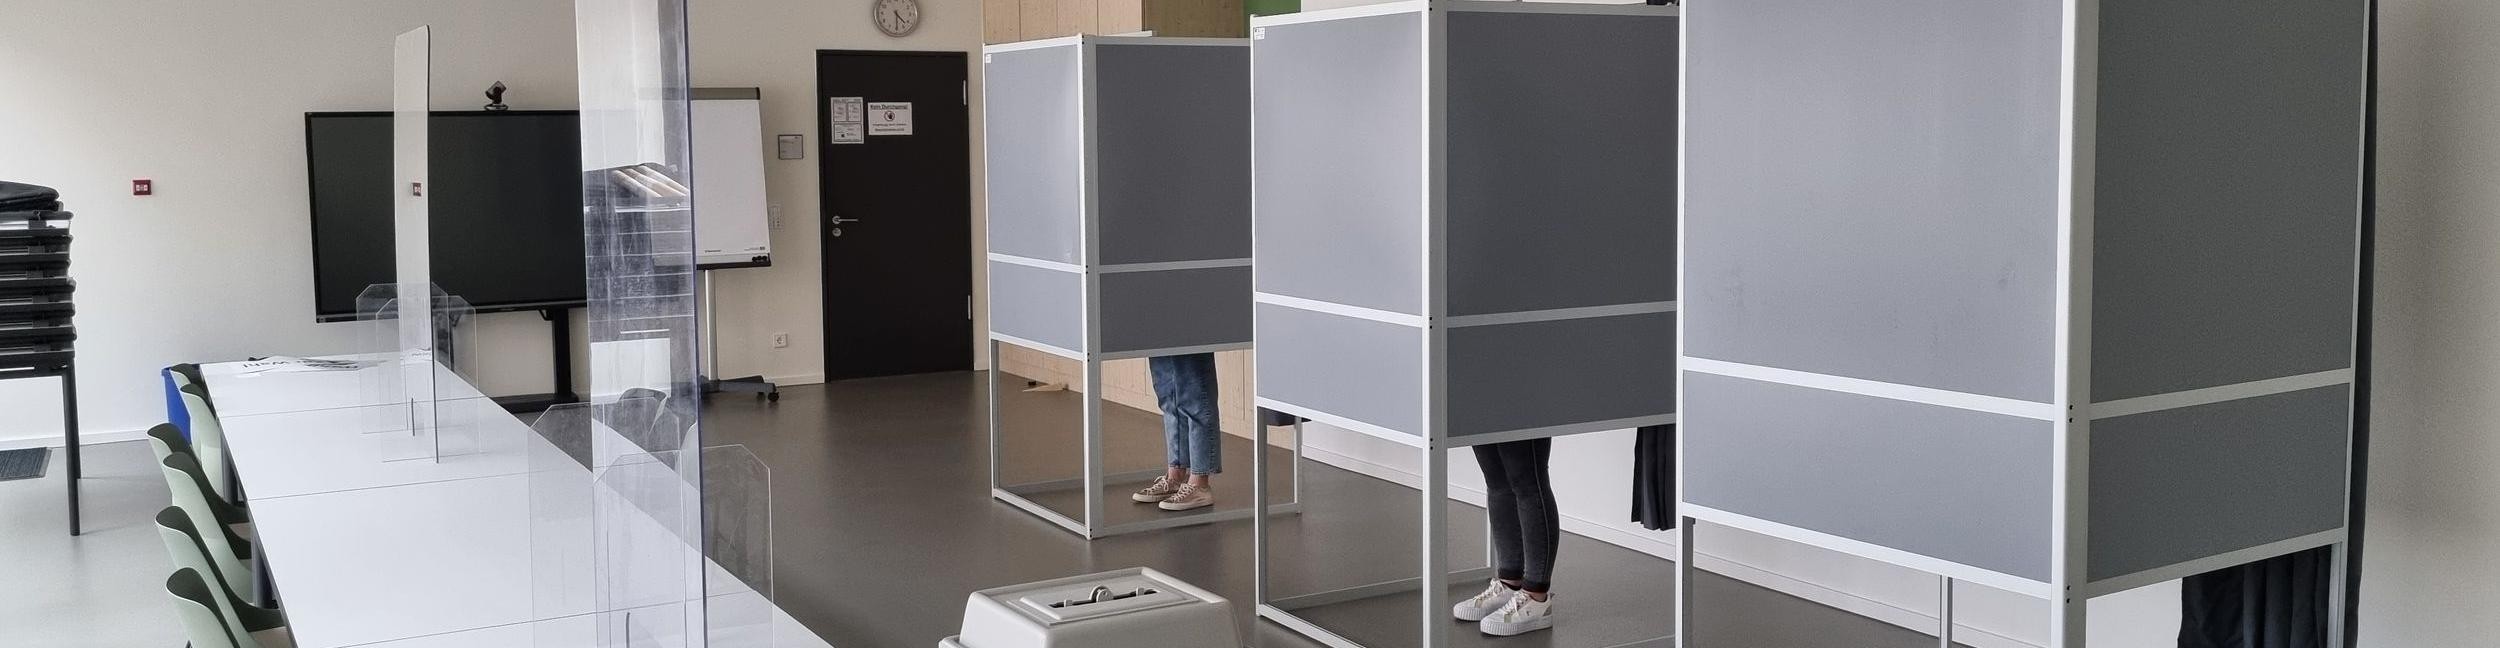 Menschen stehen in der Wahlkabine in einem Wahllokal